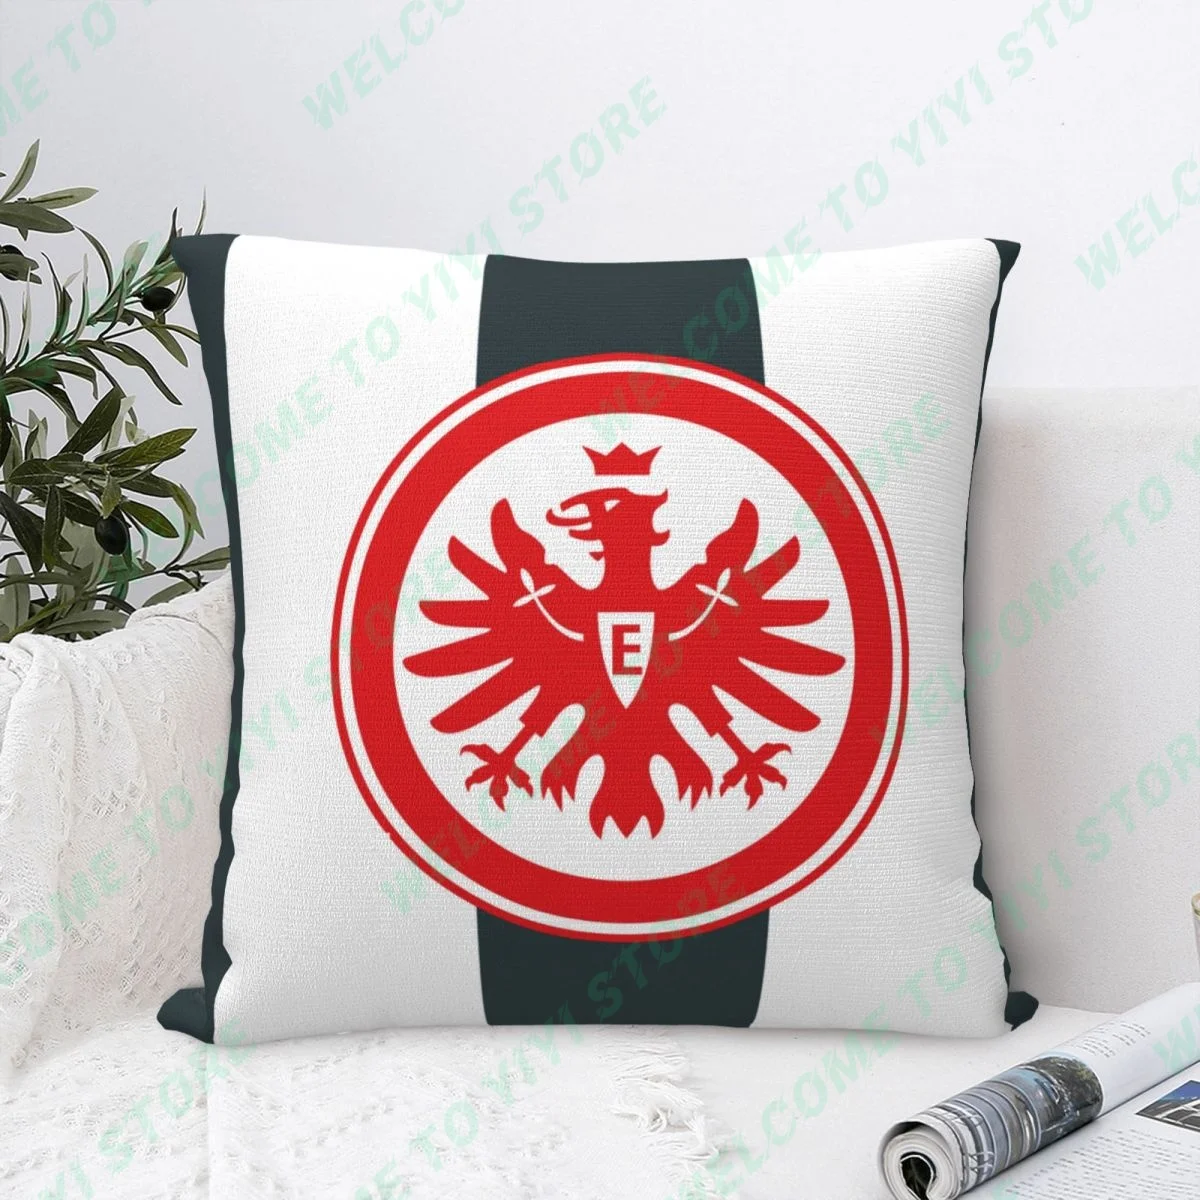 Taie d'oreiller décorative Eintracht FrankindexFuball AG, housse de coussin pour voiture, canapé, salon, nouveau